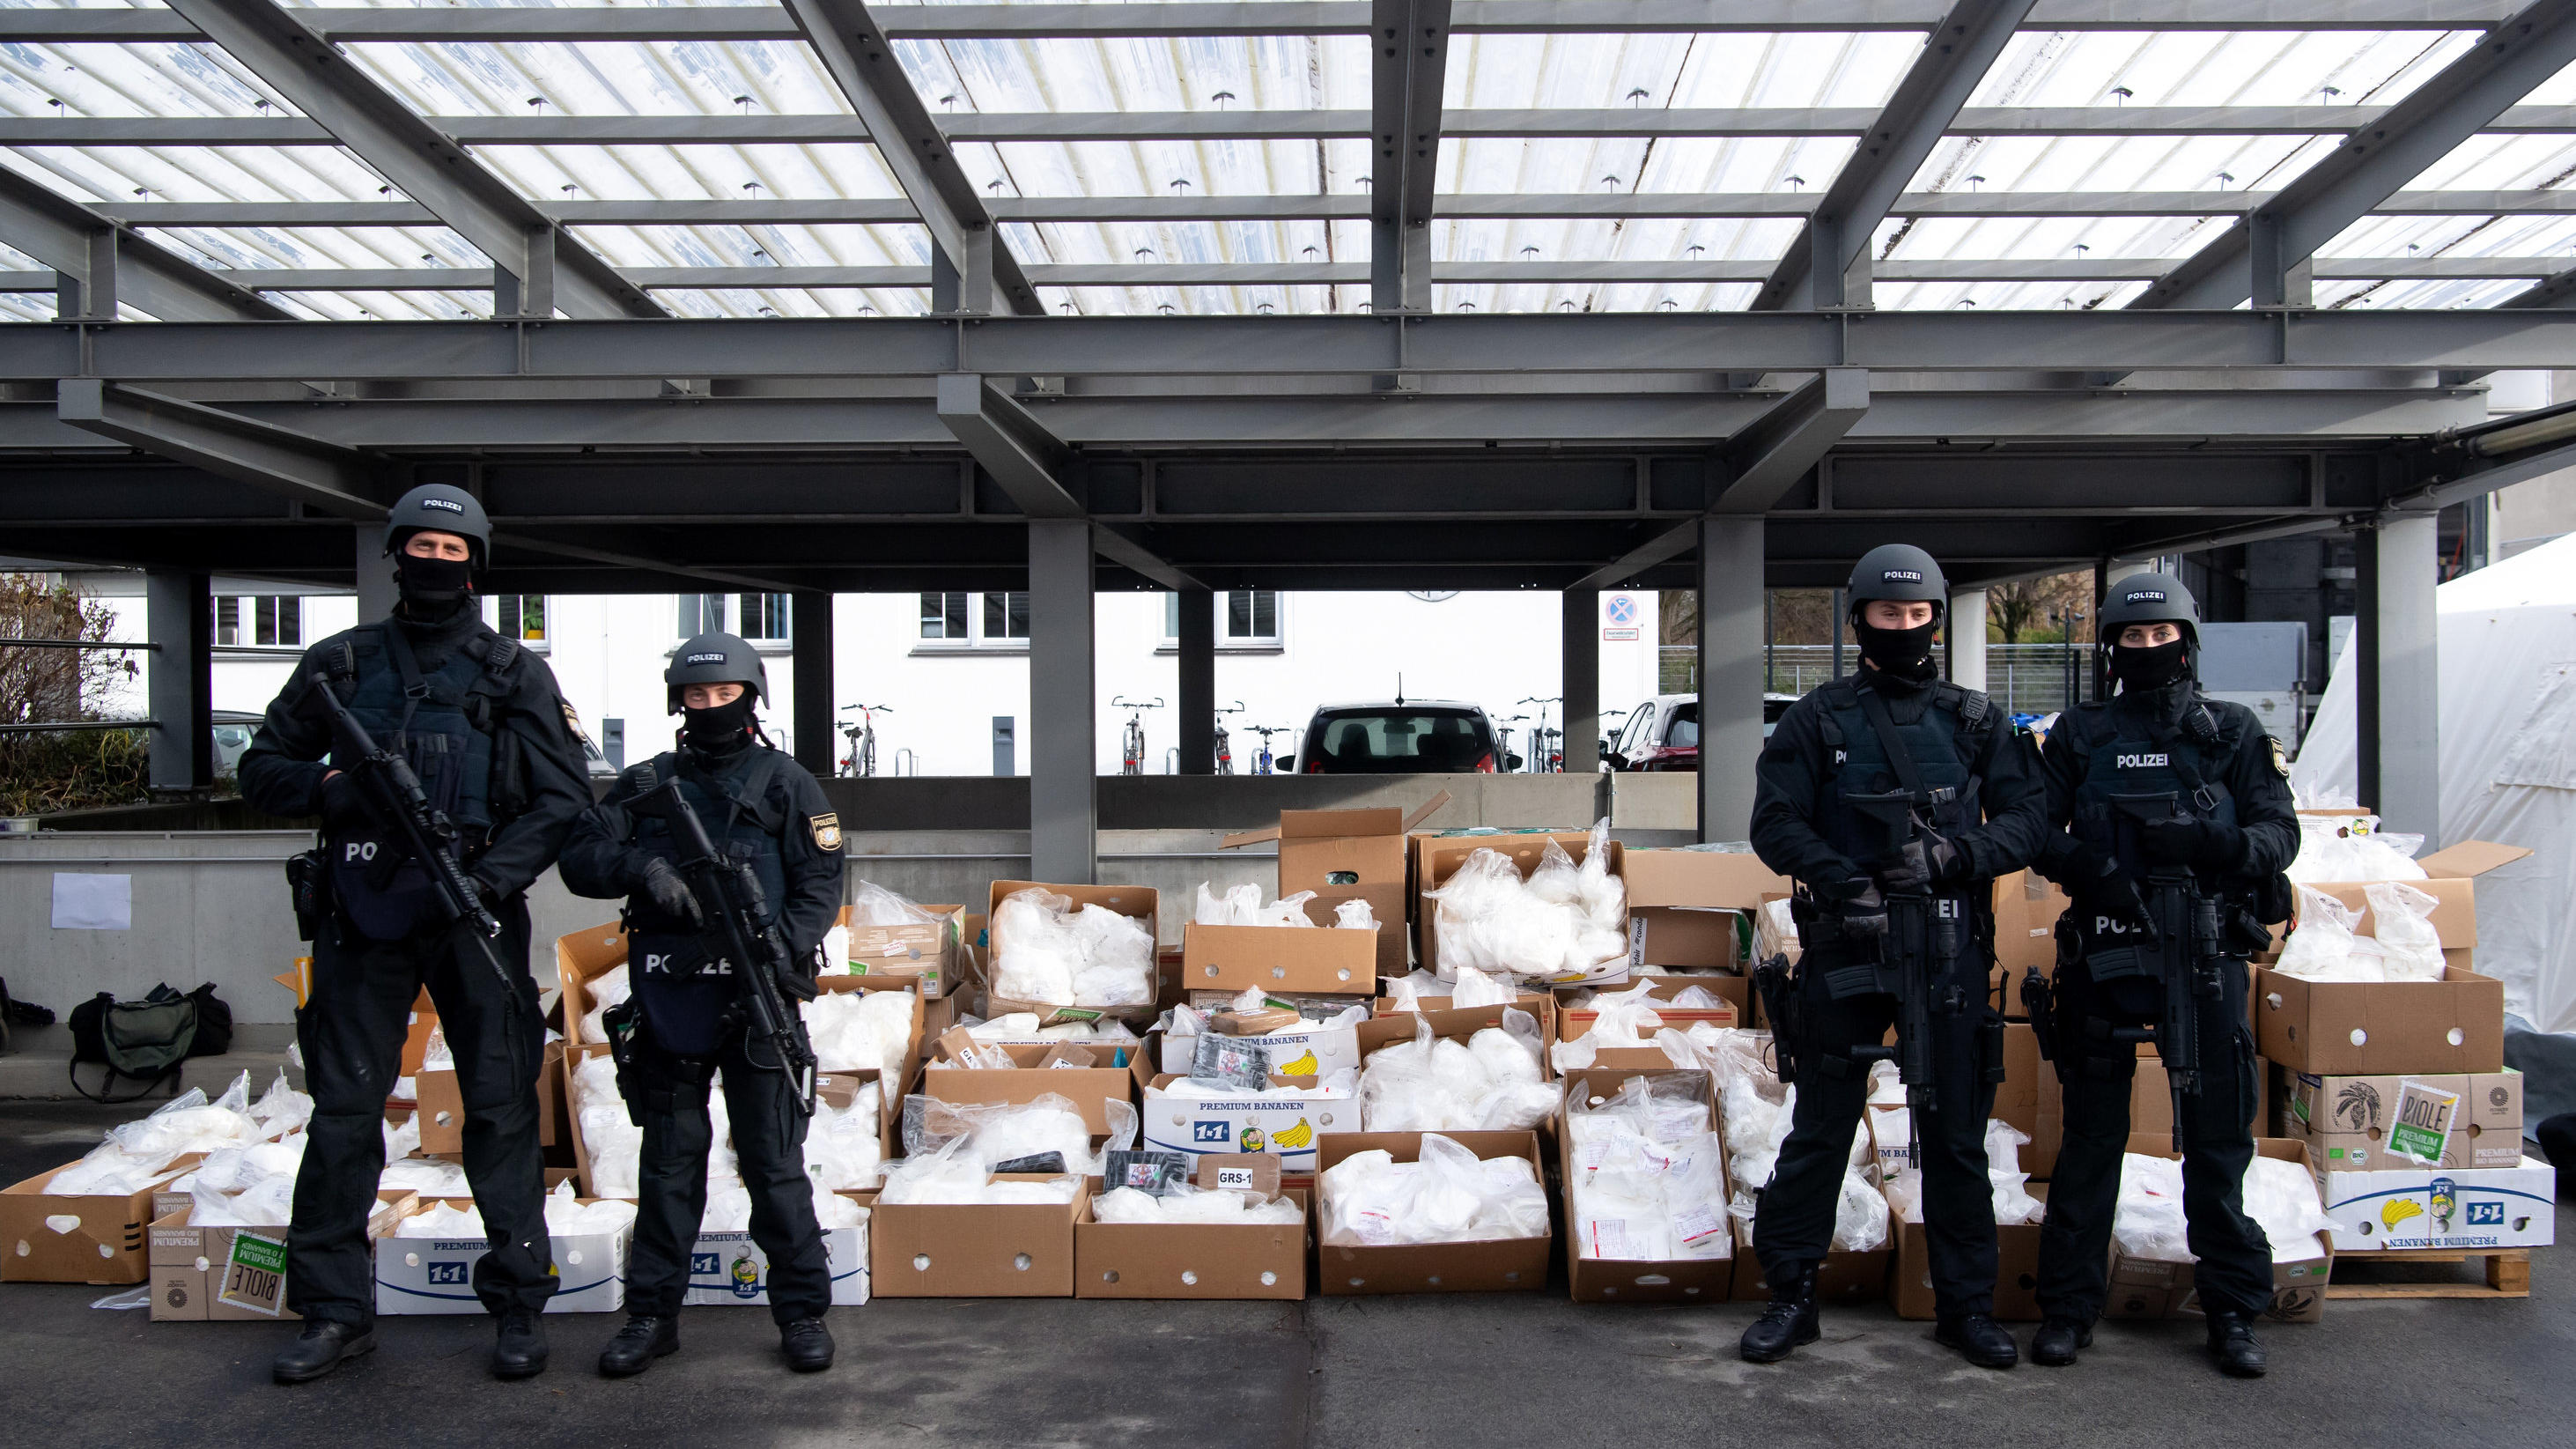 ARCHIV - 14.12.2021, Bayern, ---: Polizisten bewachen Kokain vor dem Transport zu einer Müllverbrennungsanlage. Im Rahmen der Operation «Schneeschmelze» hatte die bayerische Polizei am 14.12.2021 unter strengsten Sicherheitsvorkehrungen das Kokain an